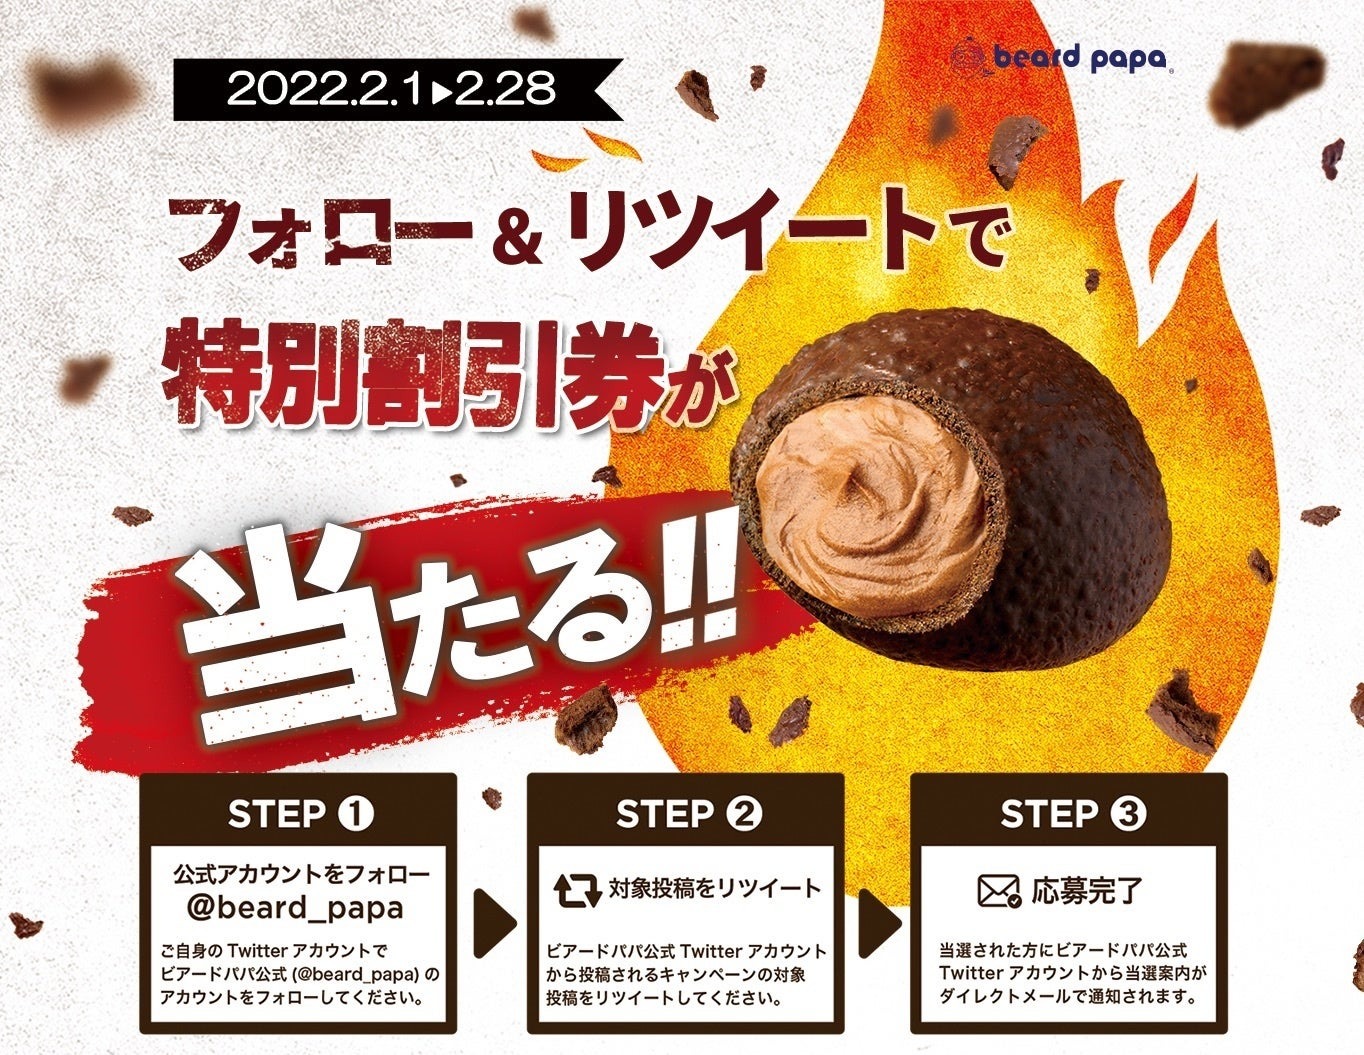 シュークリーム専門店ビアードパパ 季節限定「焼チョコシュー」発売記念キャンペーン